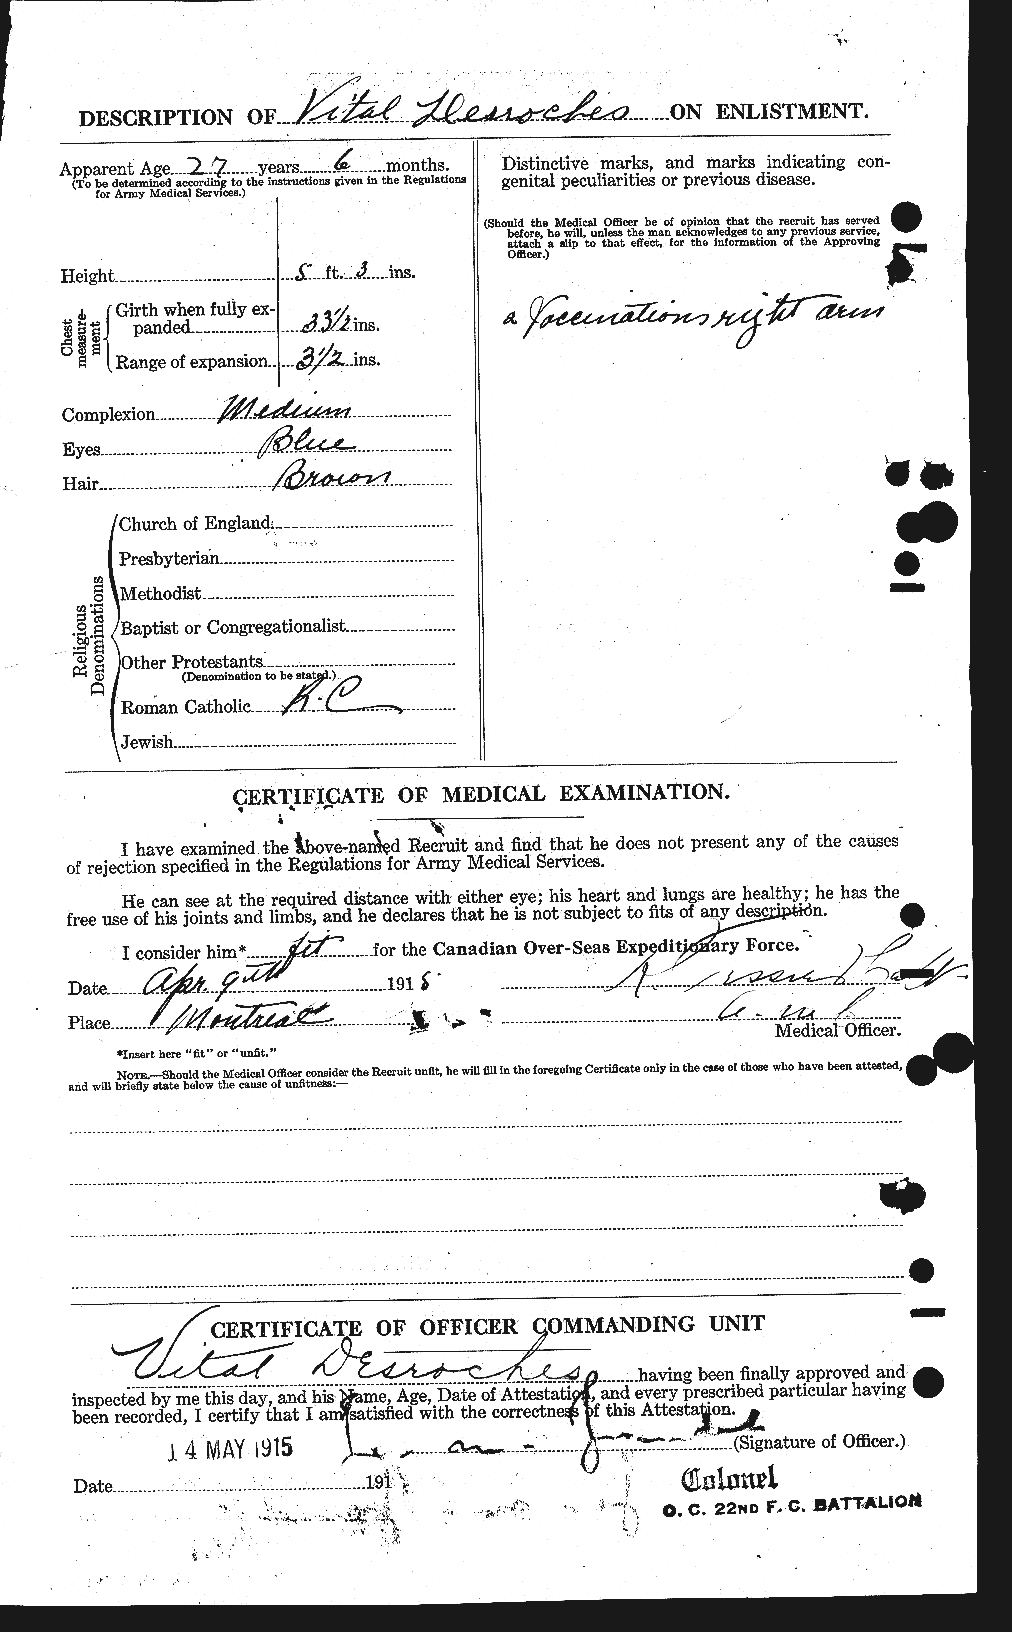 Dossiers du Personnel de la Première Guerre mondiale - CEC 289279b